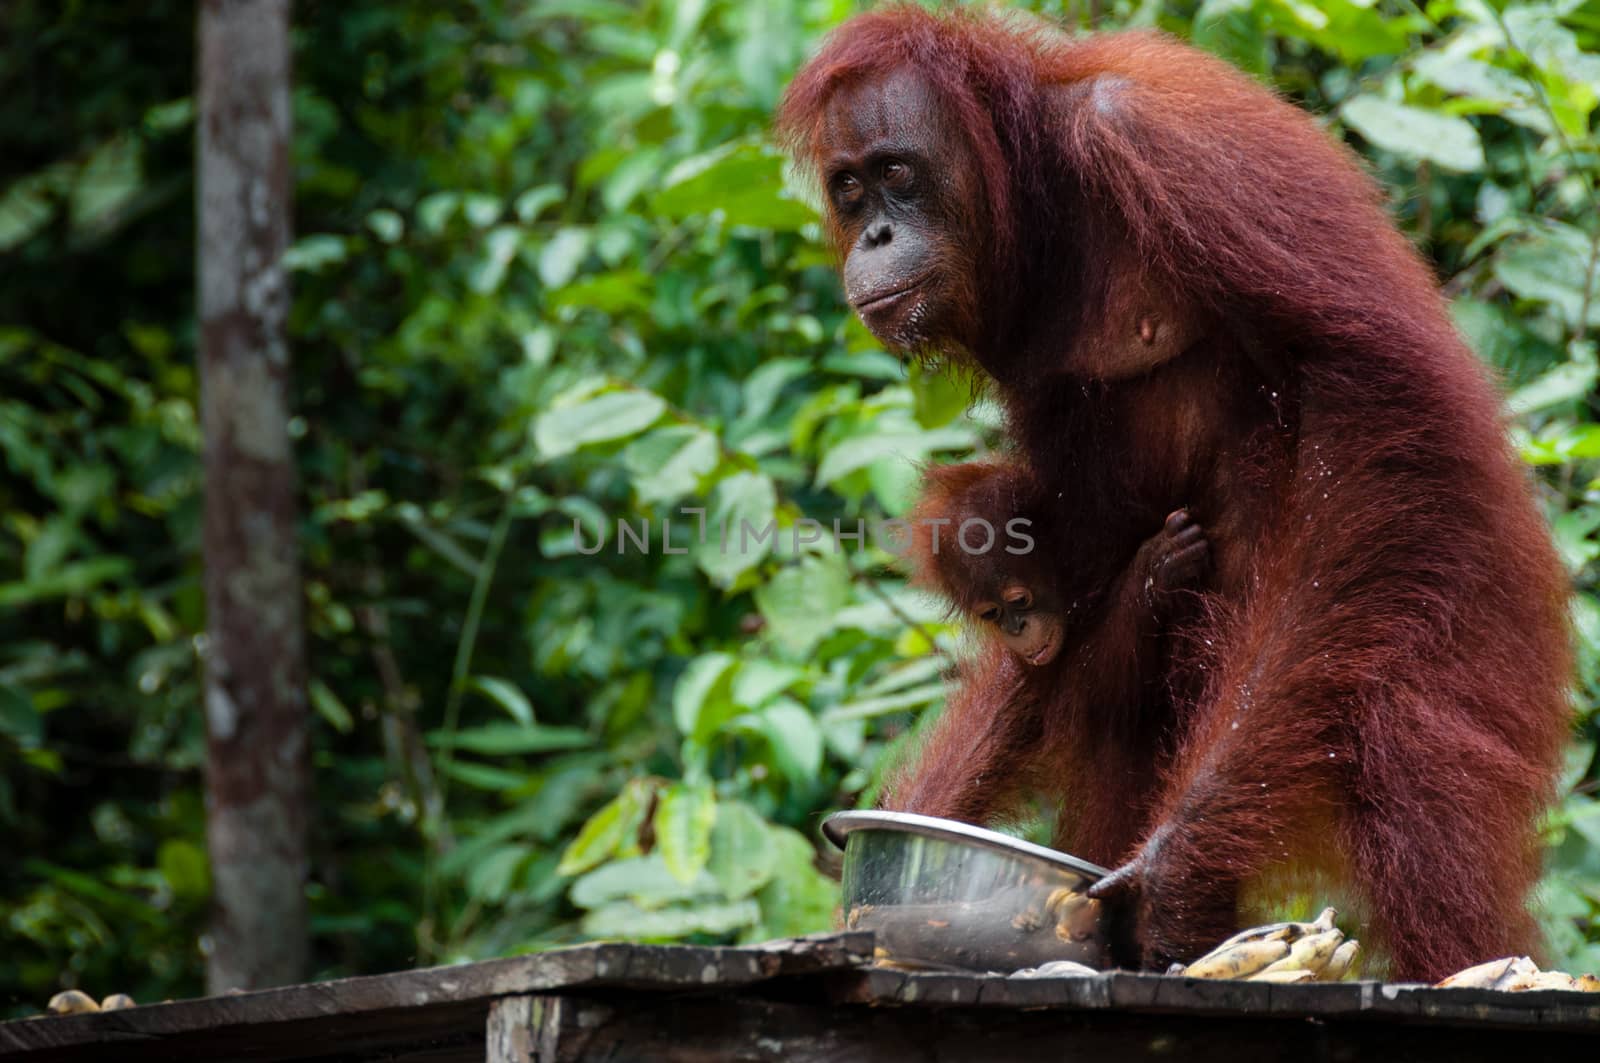 Orang Utan eating Bananas in national park Tanjung Puting Kalimantan Borneo Indonesia